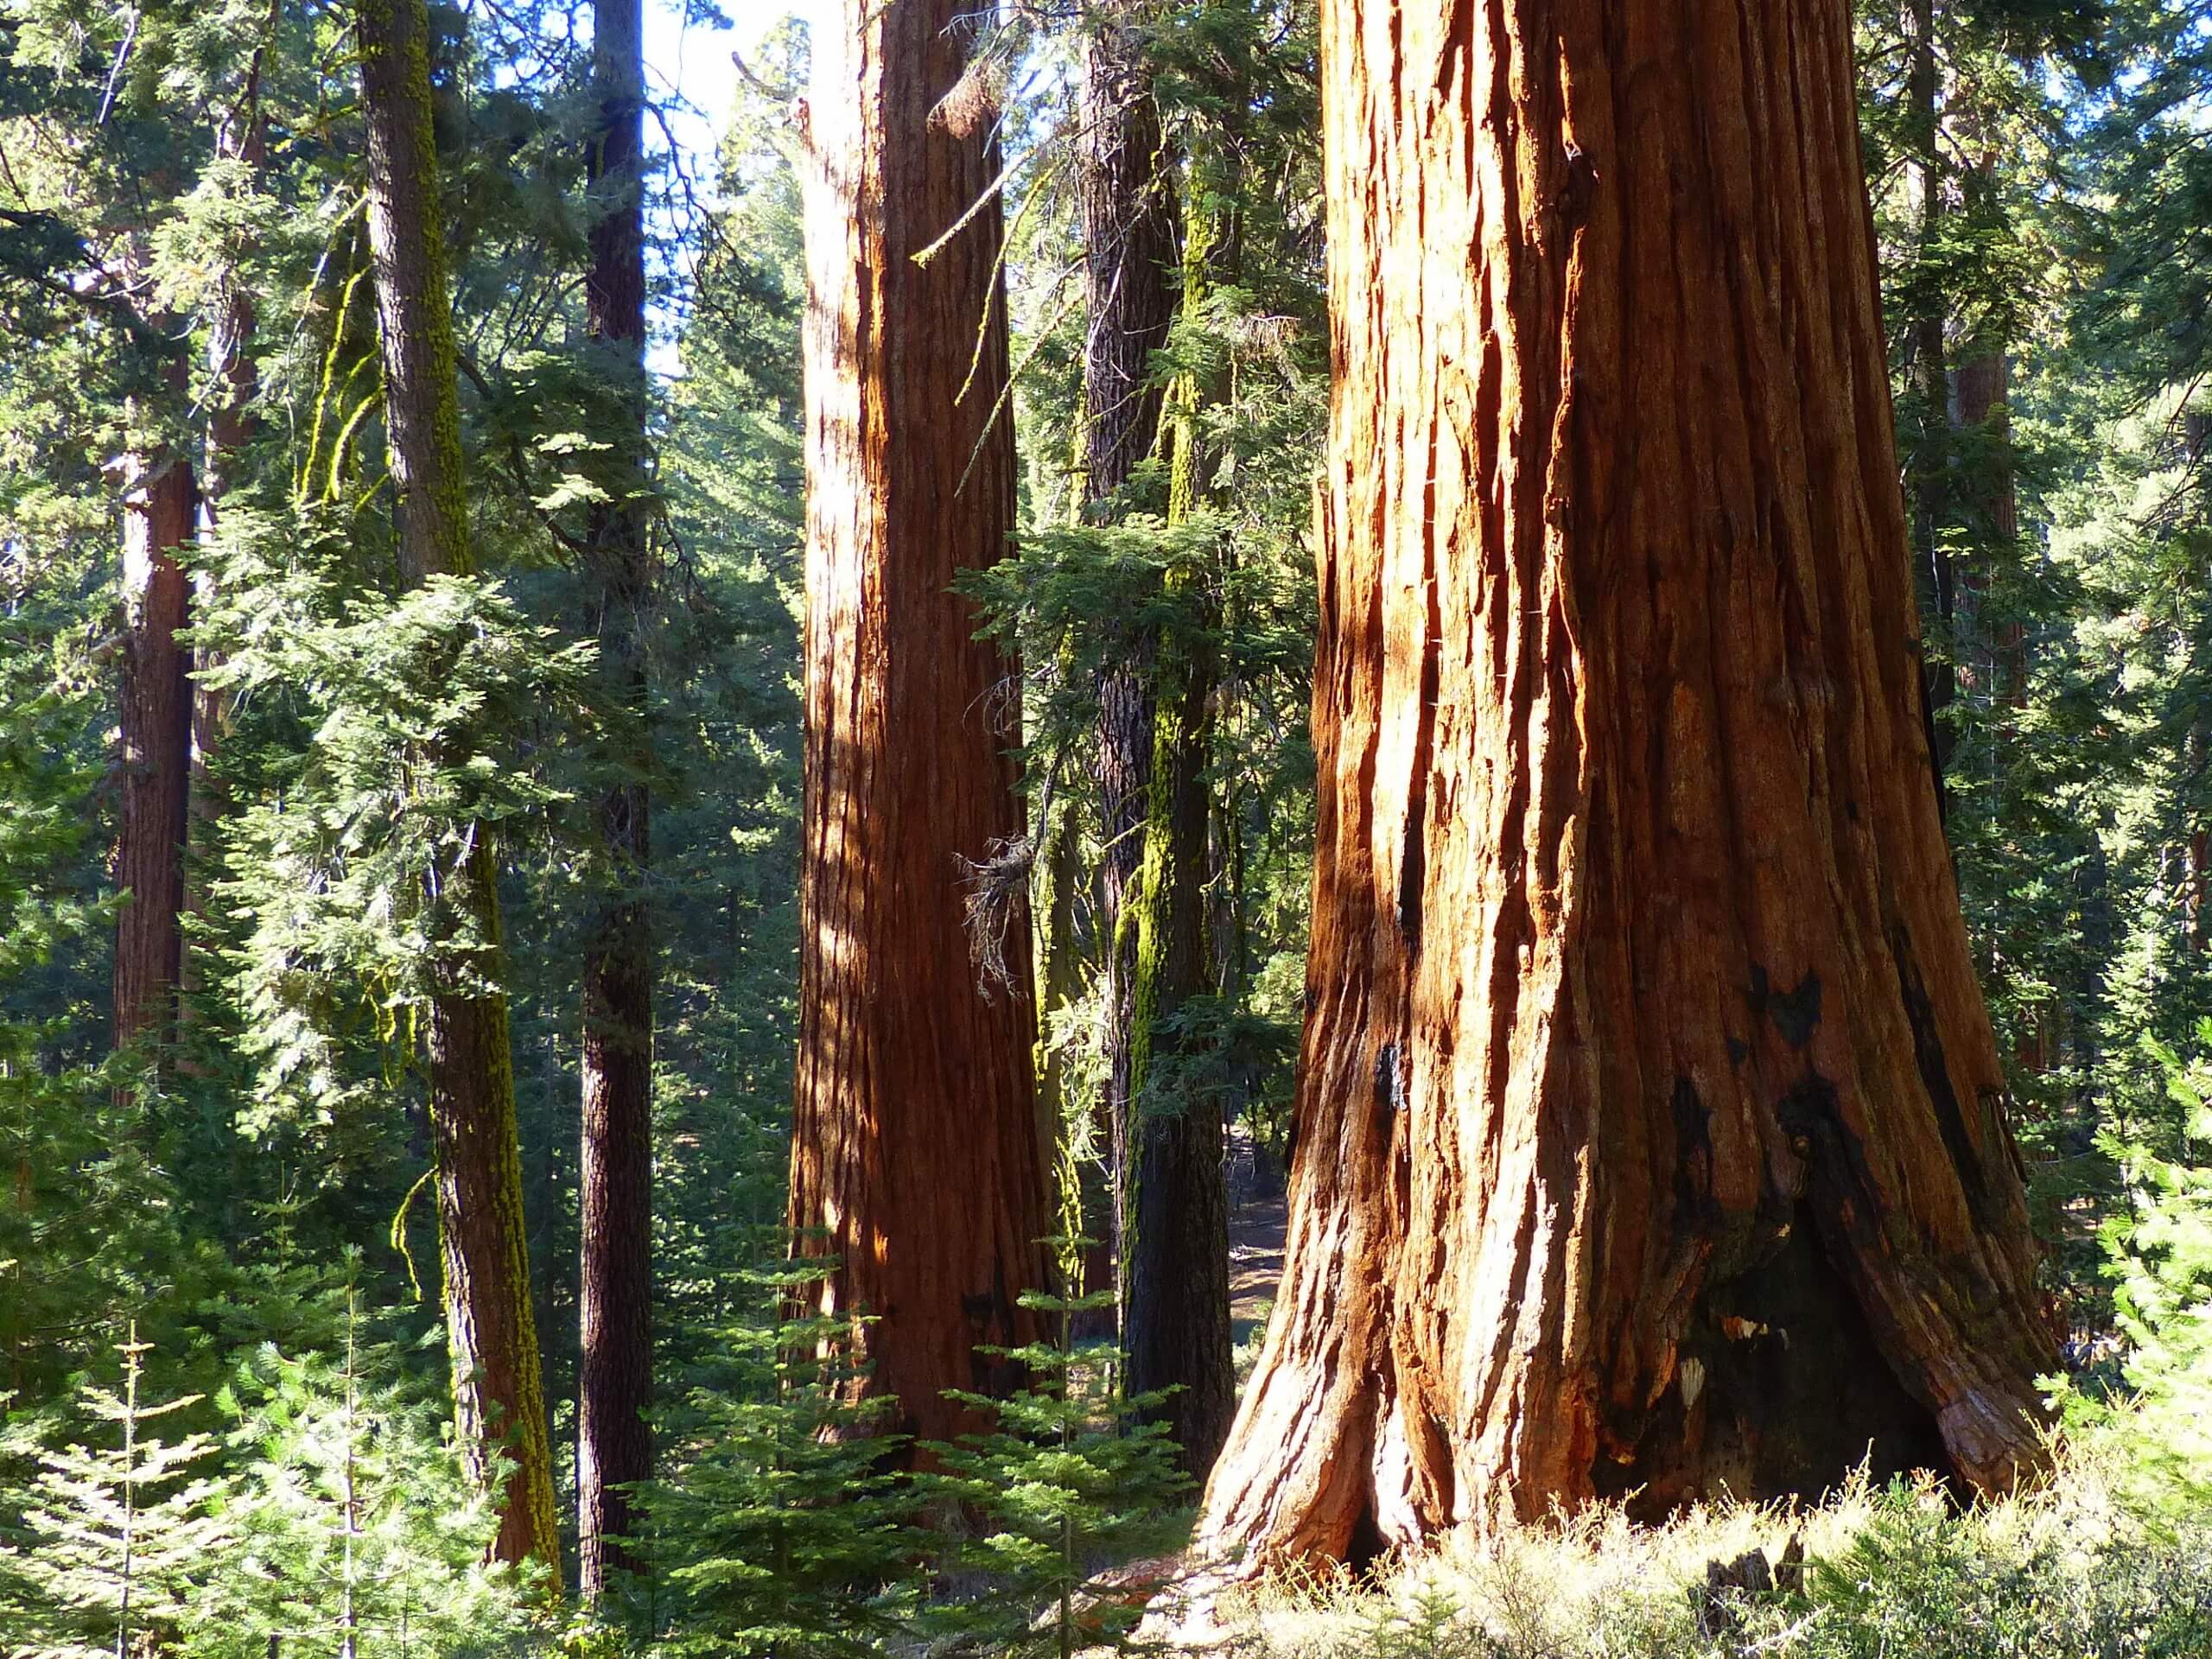 Mariposa Grove of Giant Sequoias Trail